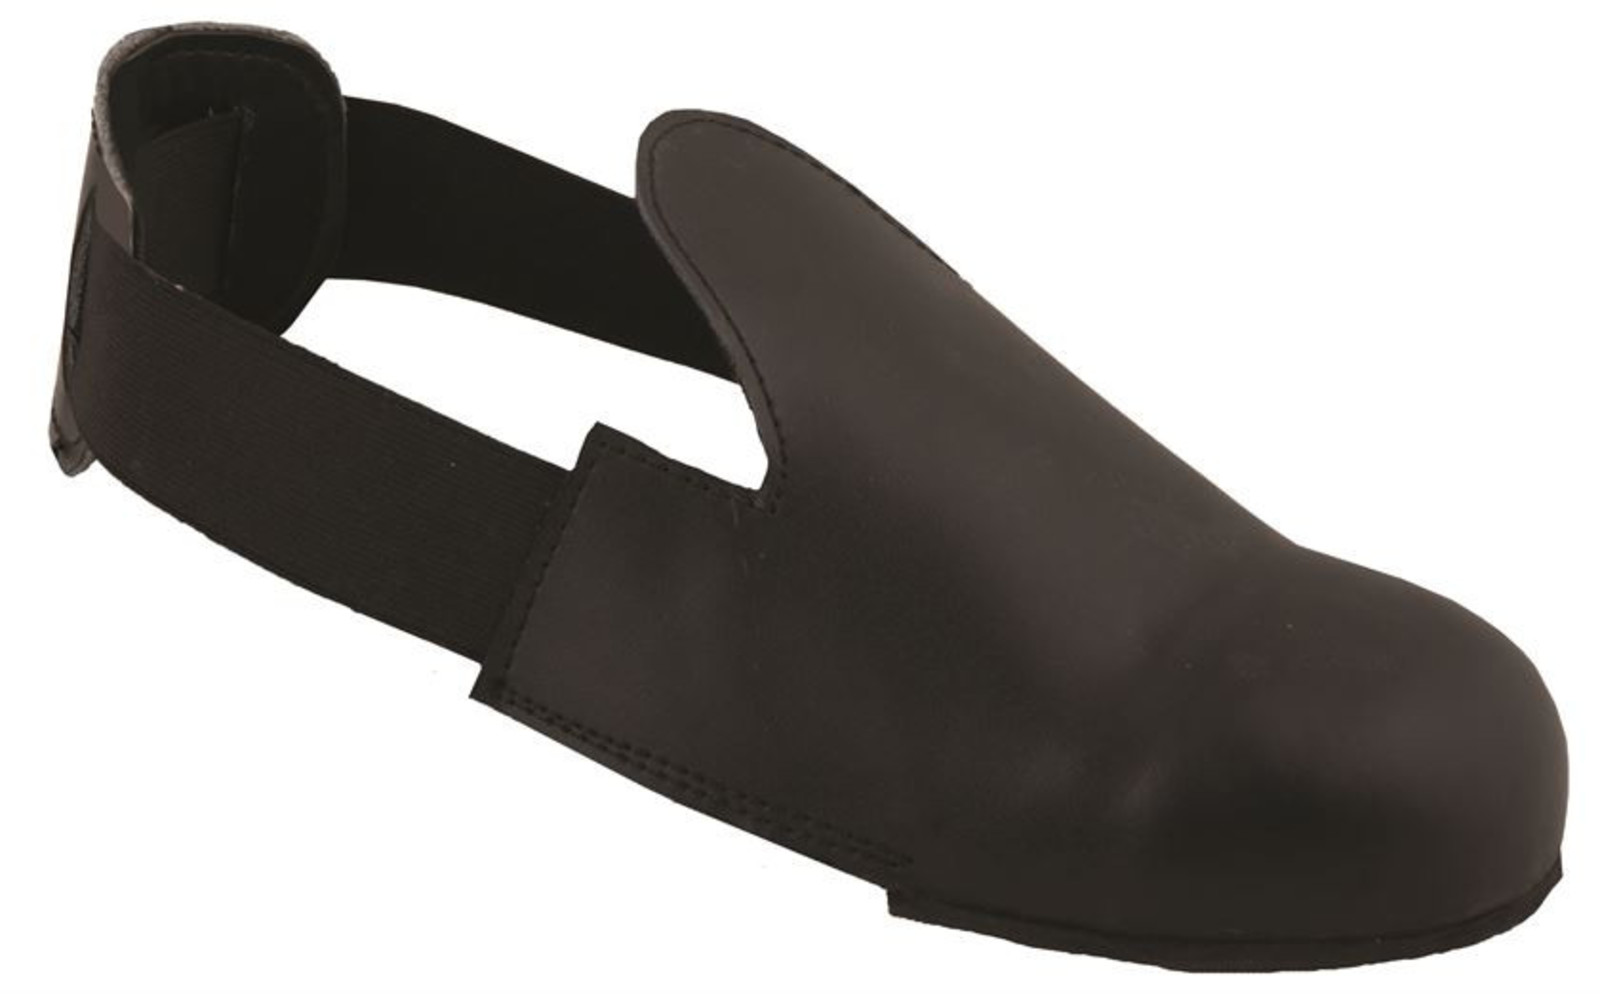 Bezpečnostné návleky na obuv Ardon Drum - veľkosť: 43-47, farba: čierna